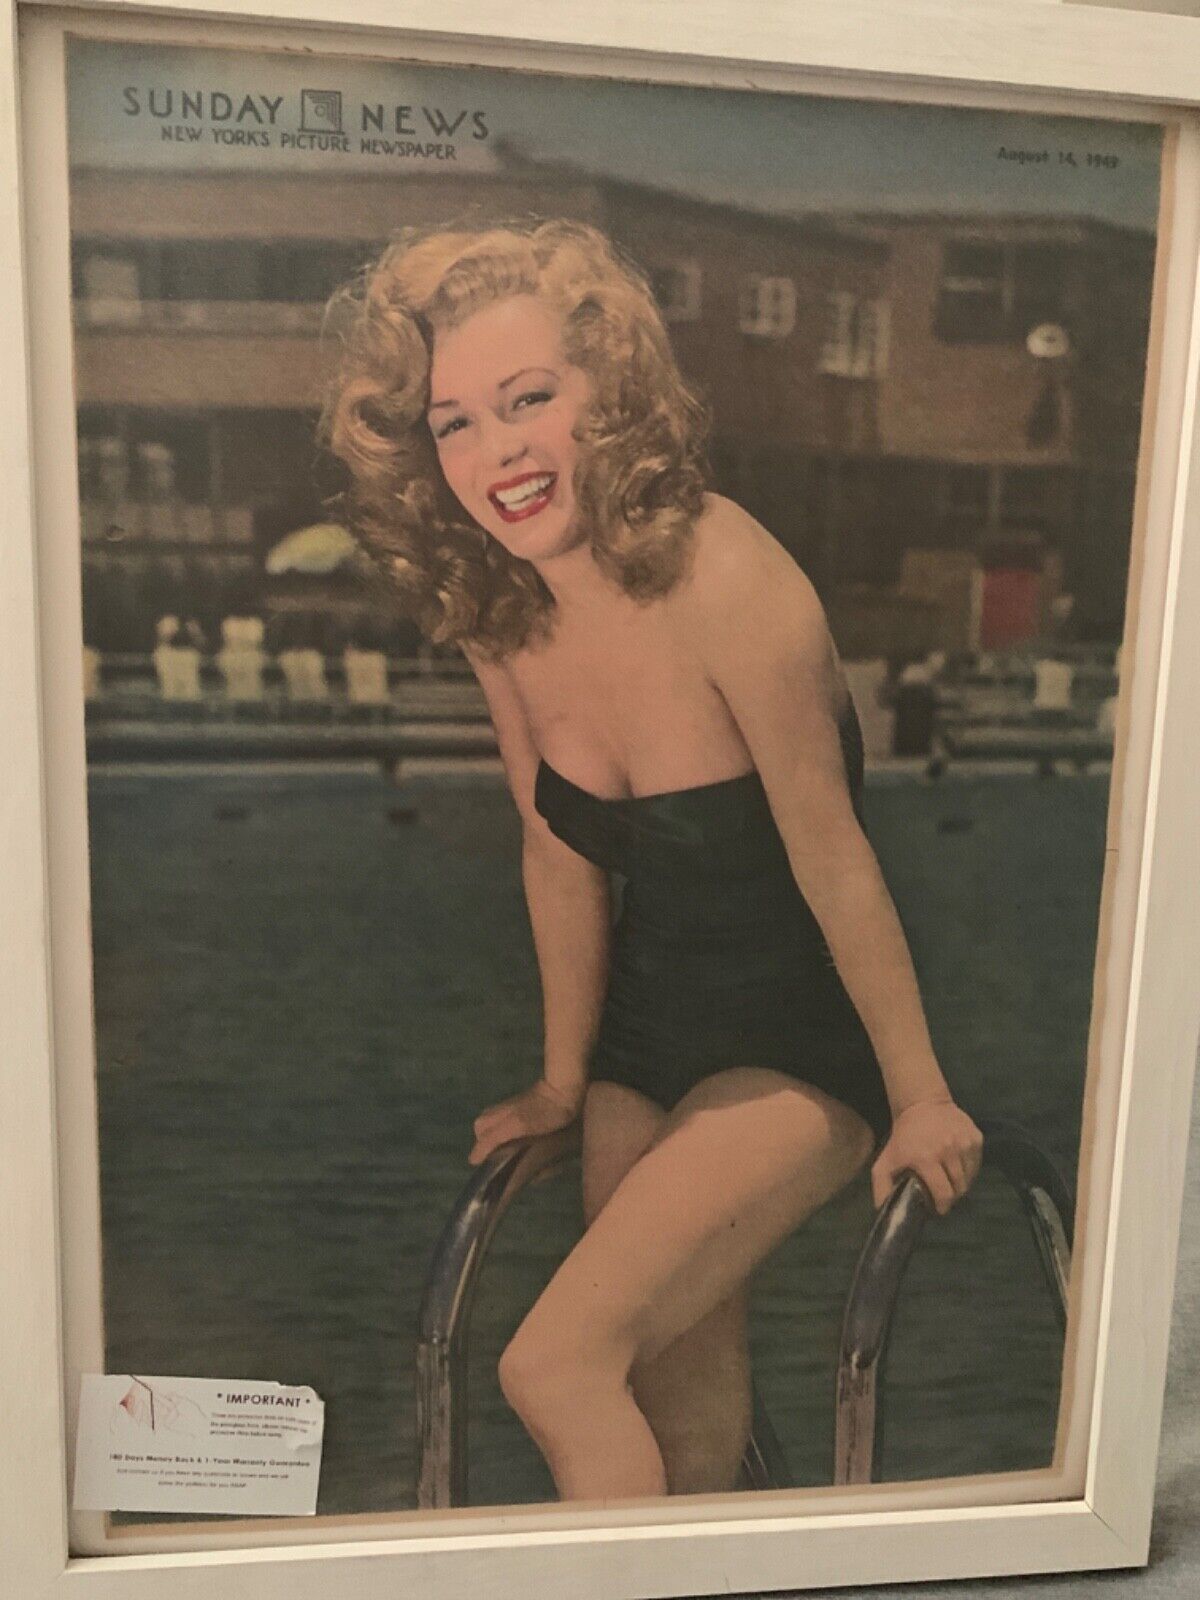 Marilyn Monroe vintage 1949 newspaper cover